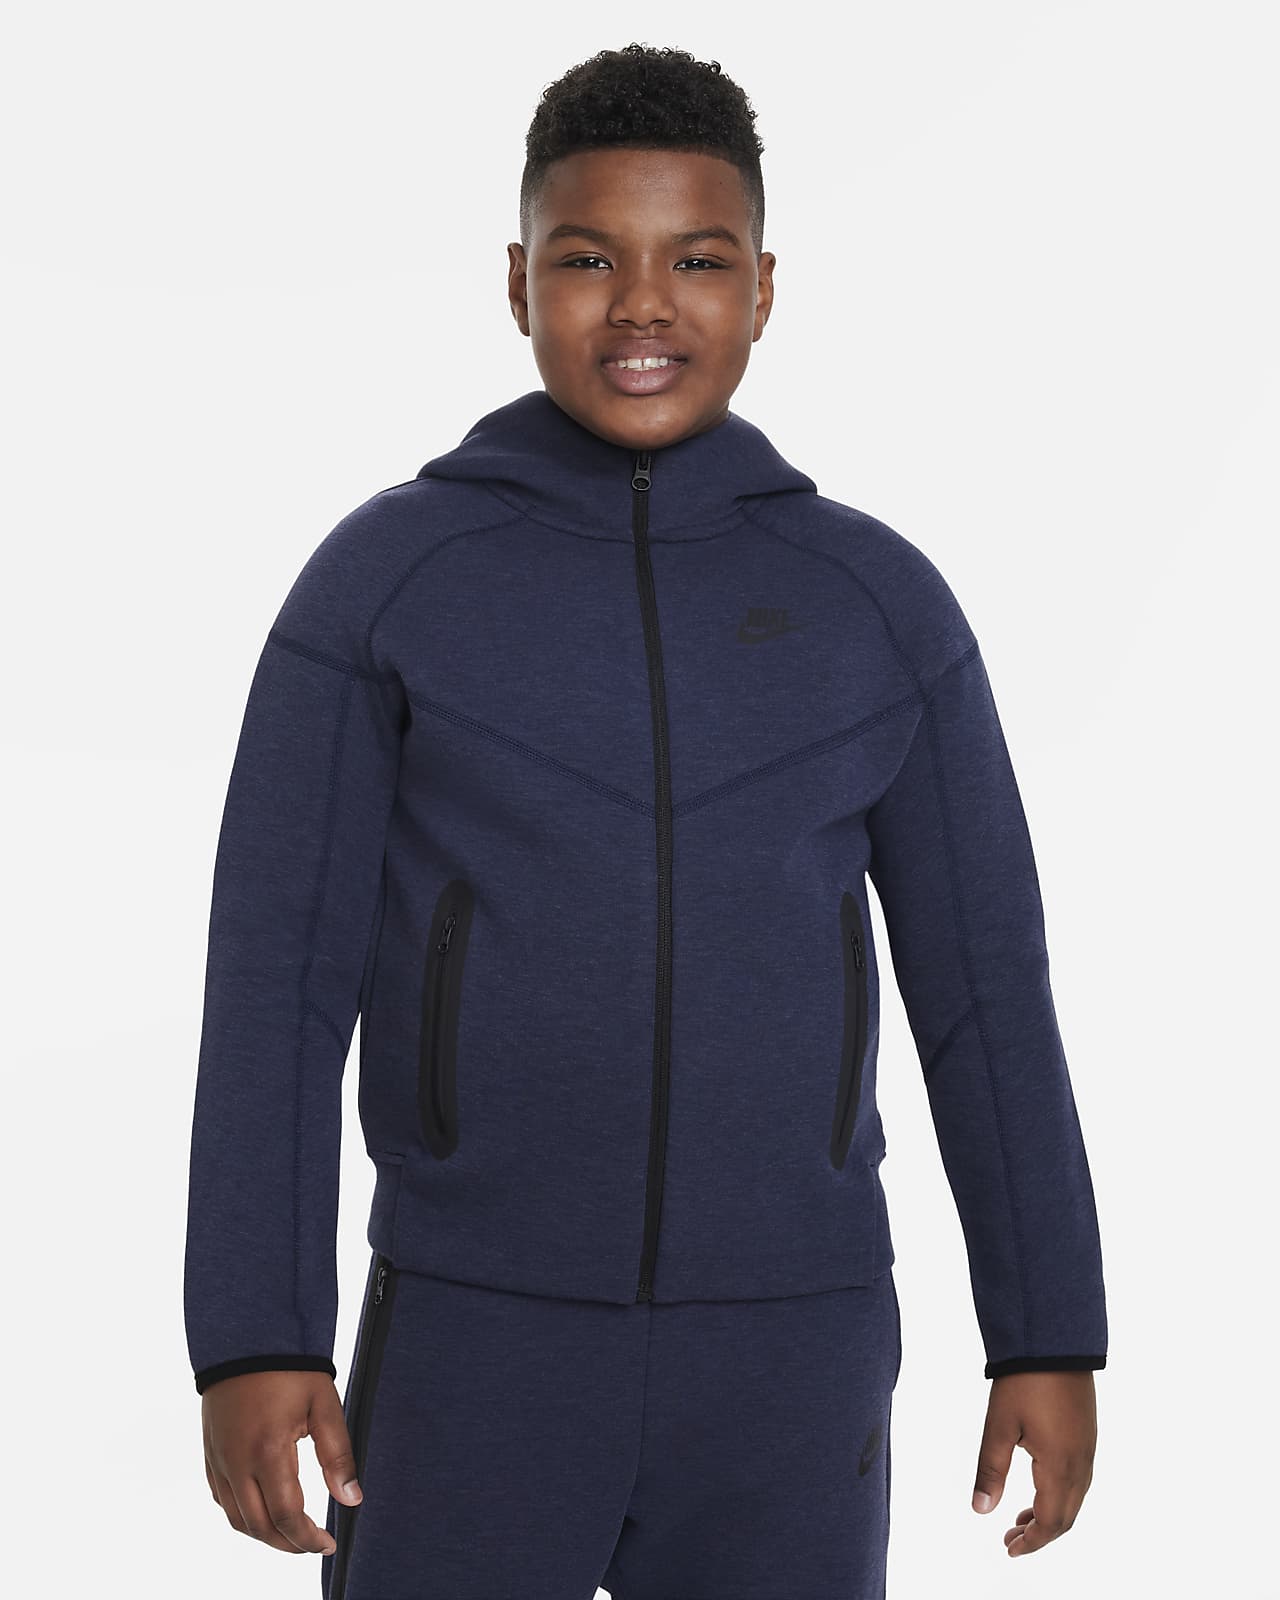 Nike Sportswear Tech Fleece Sudadera con capucha y cremallera completa (Talla grande) - Niño